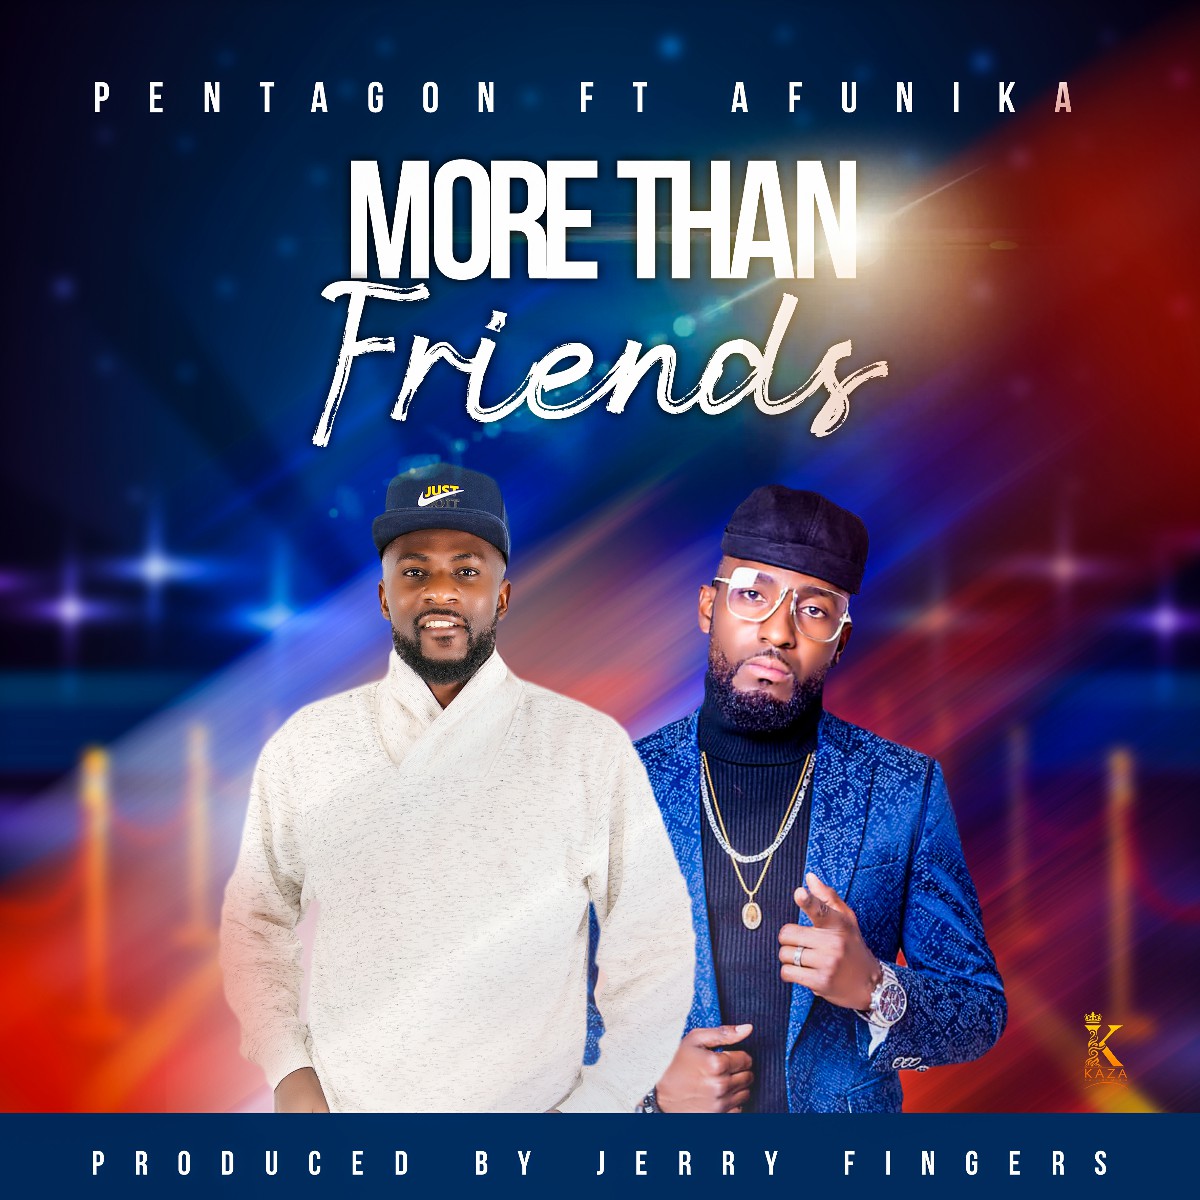 Pentagon ft. Afunika - More Than Friends